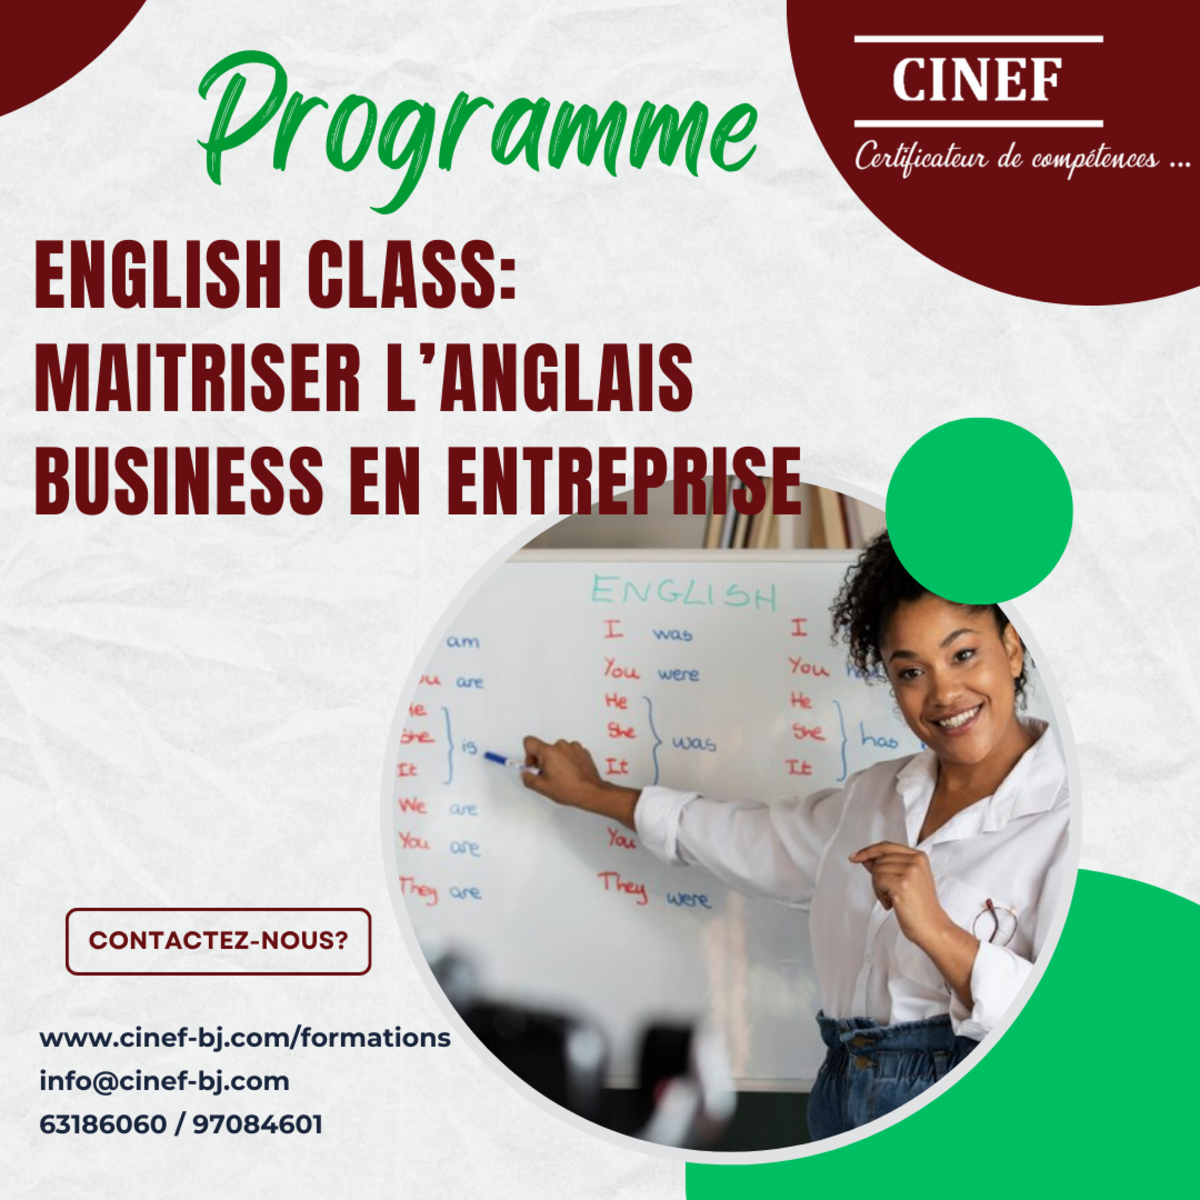 ENGLISH CLASS: MAITRISER L'ANGLAIS BUSINESS EN ENTREPRISE